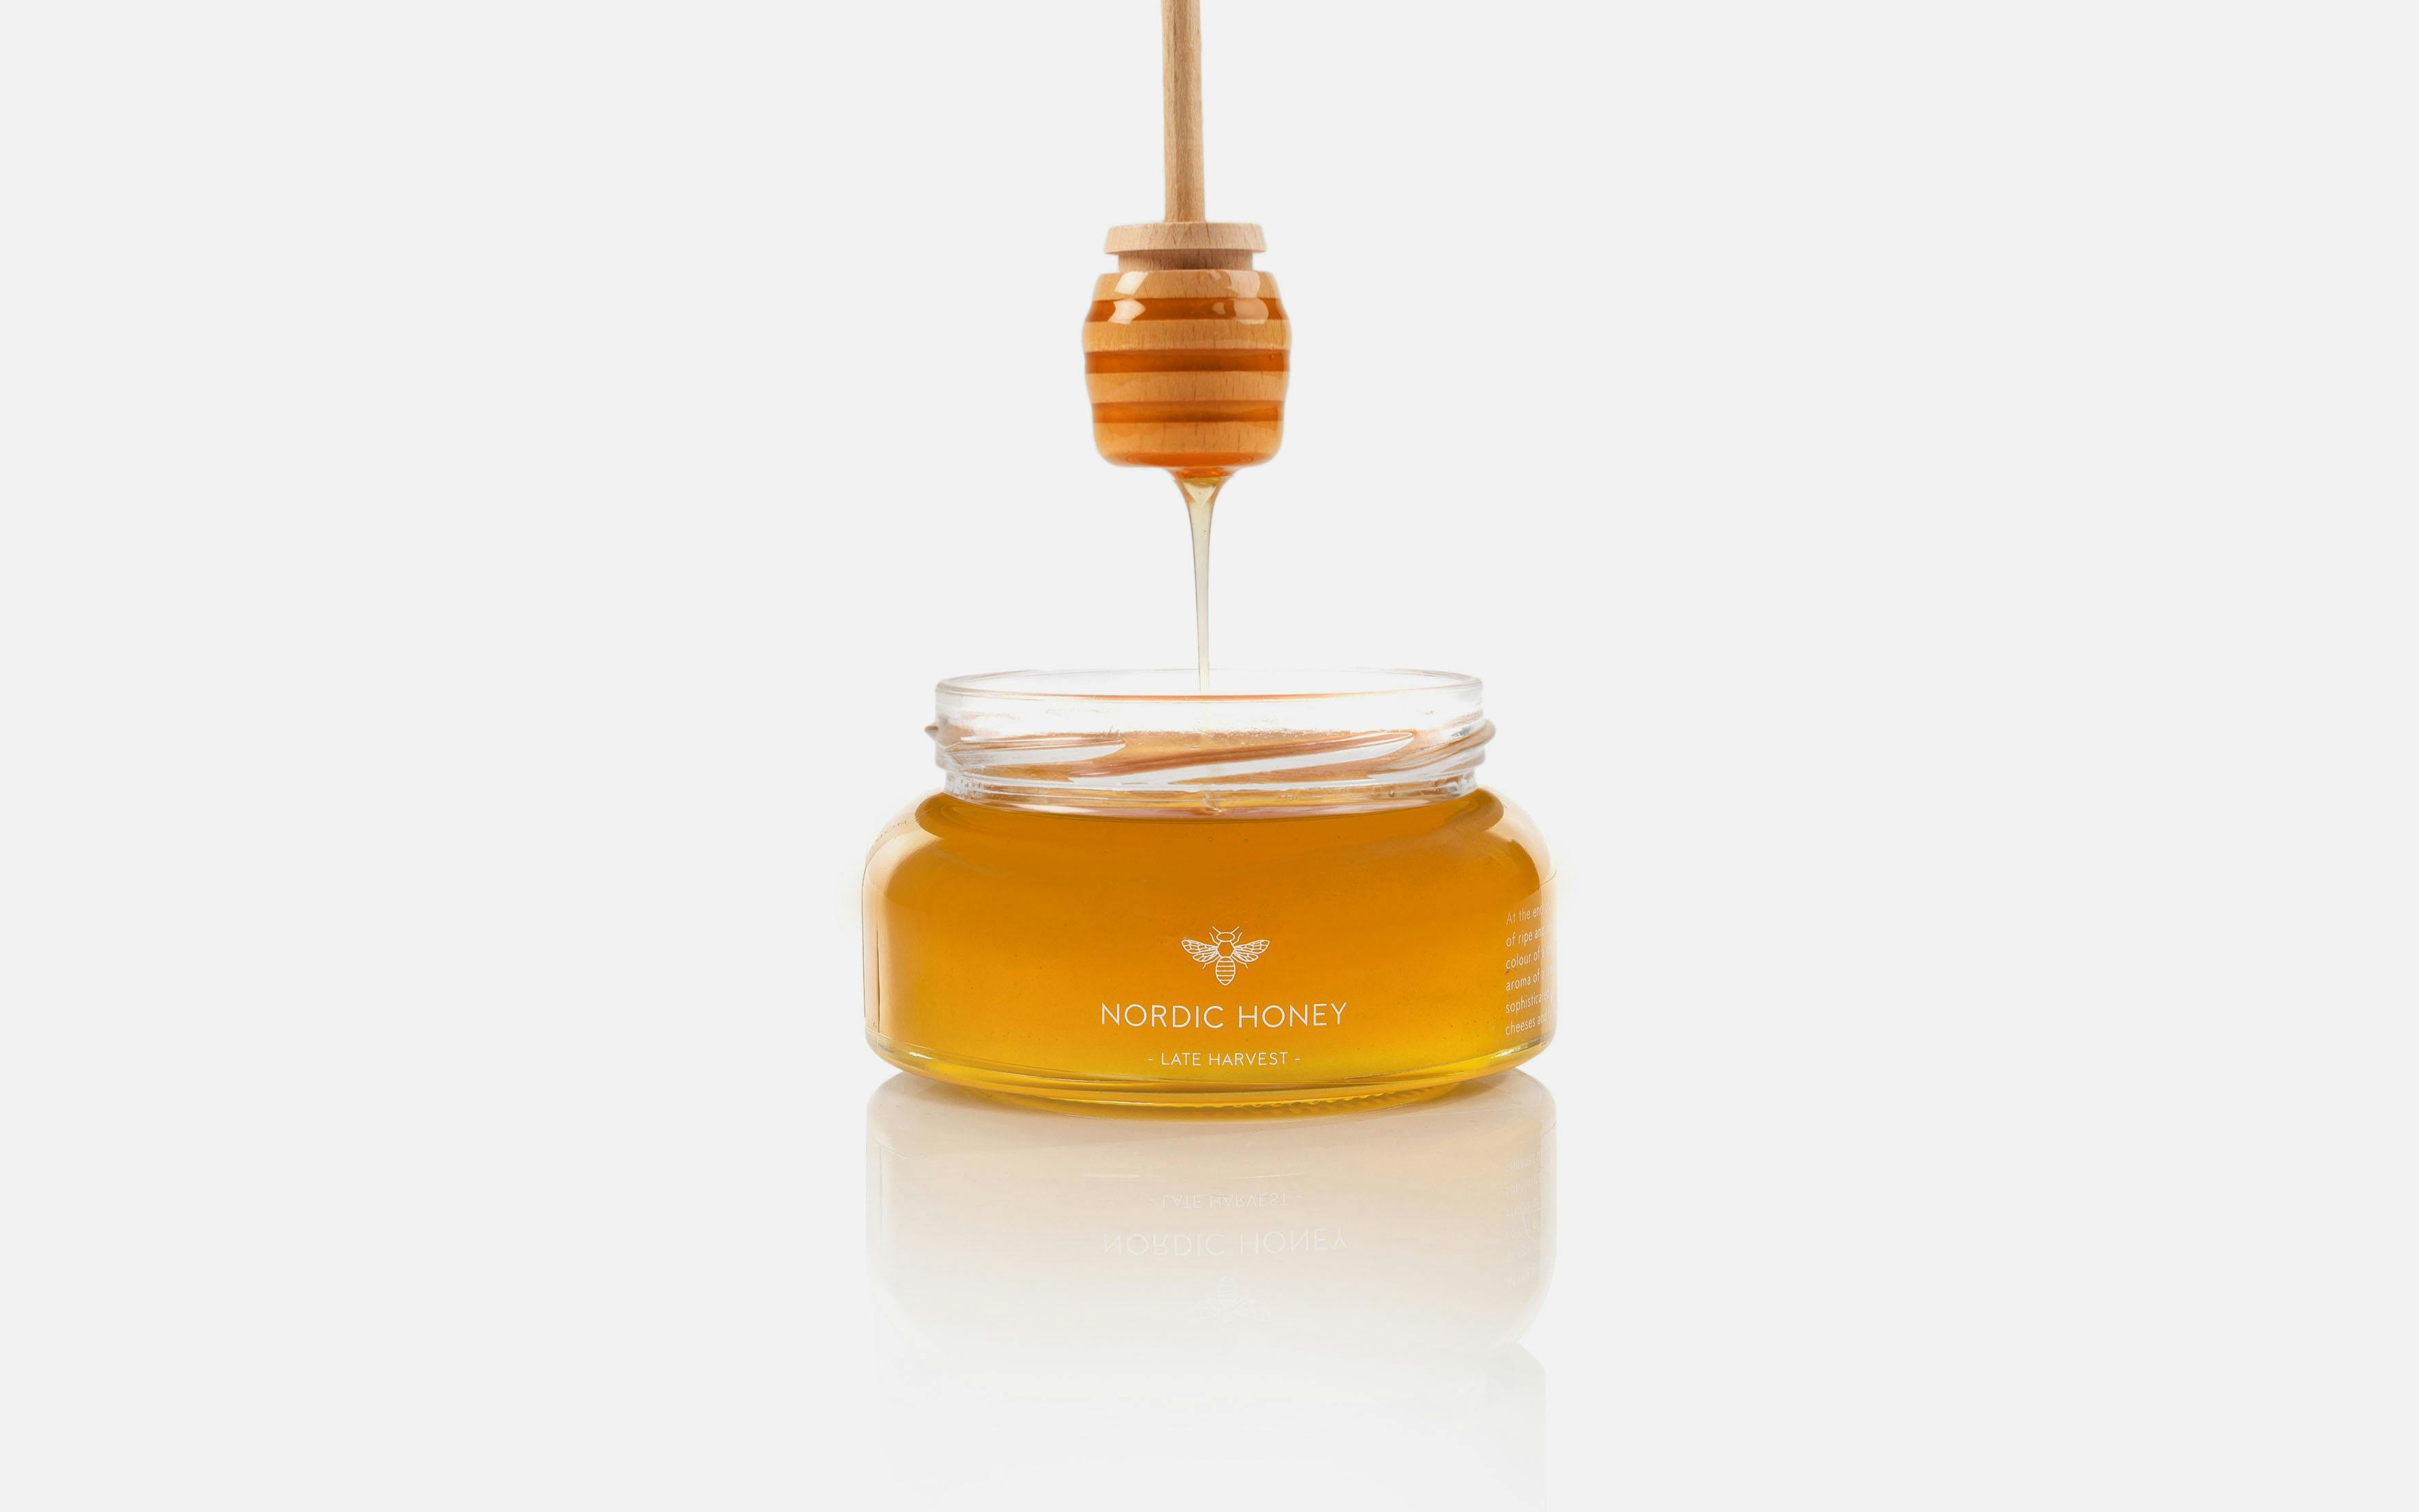 https://site.no11.ee/wp-content/uploads/2018/05/No11_Nordic-Honey_packaging-design-1-2.jpg